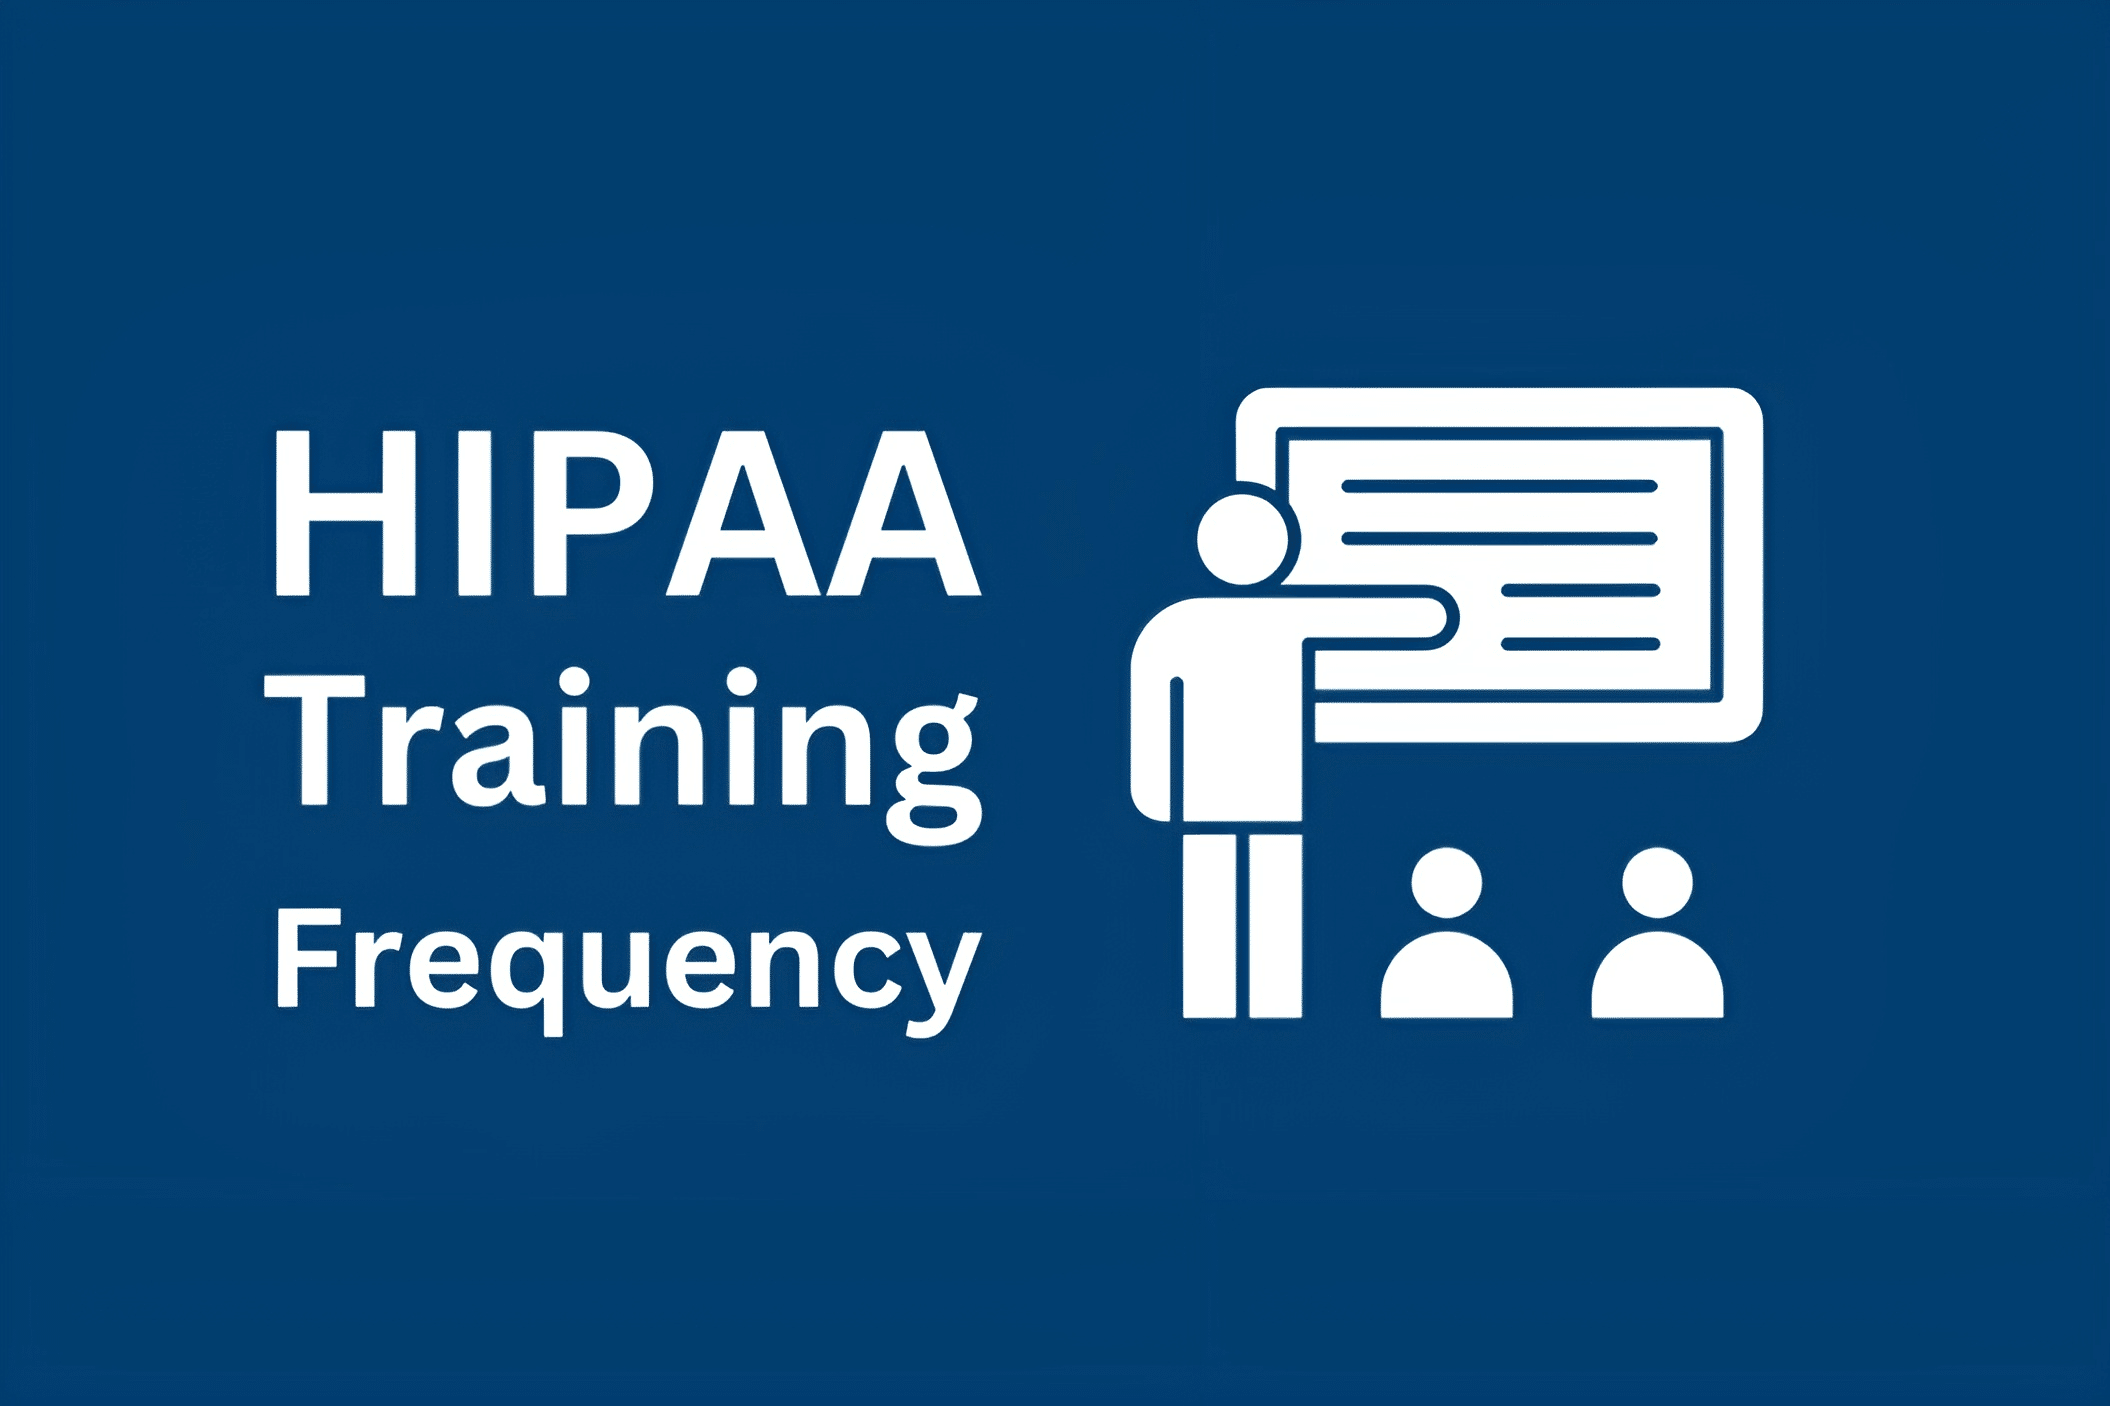 HIPAA Training Frequency